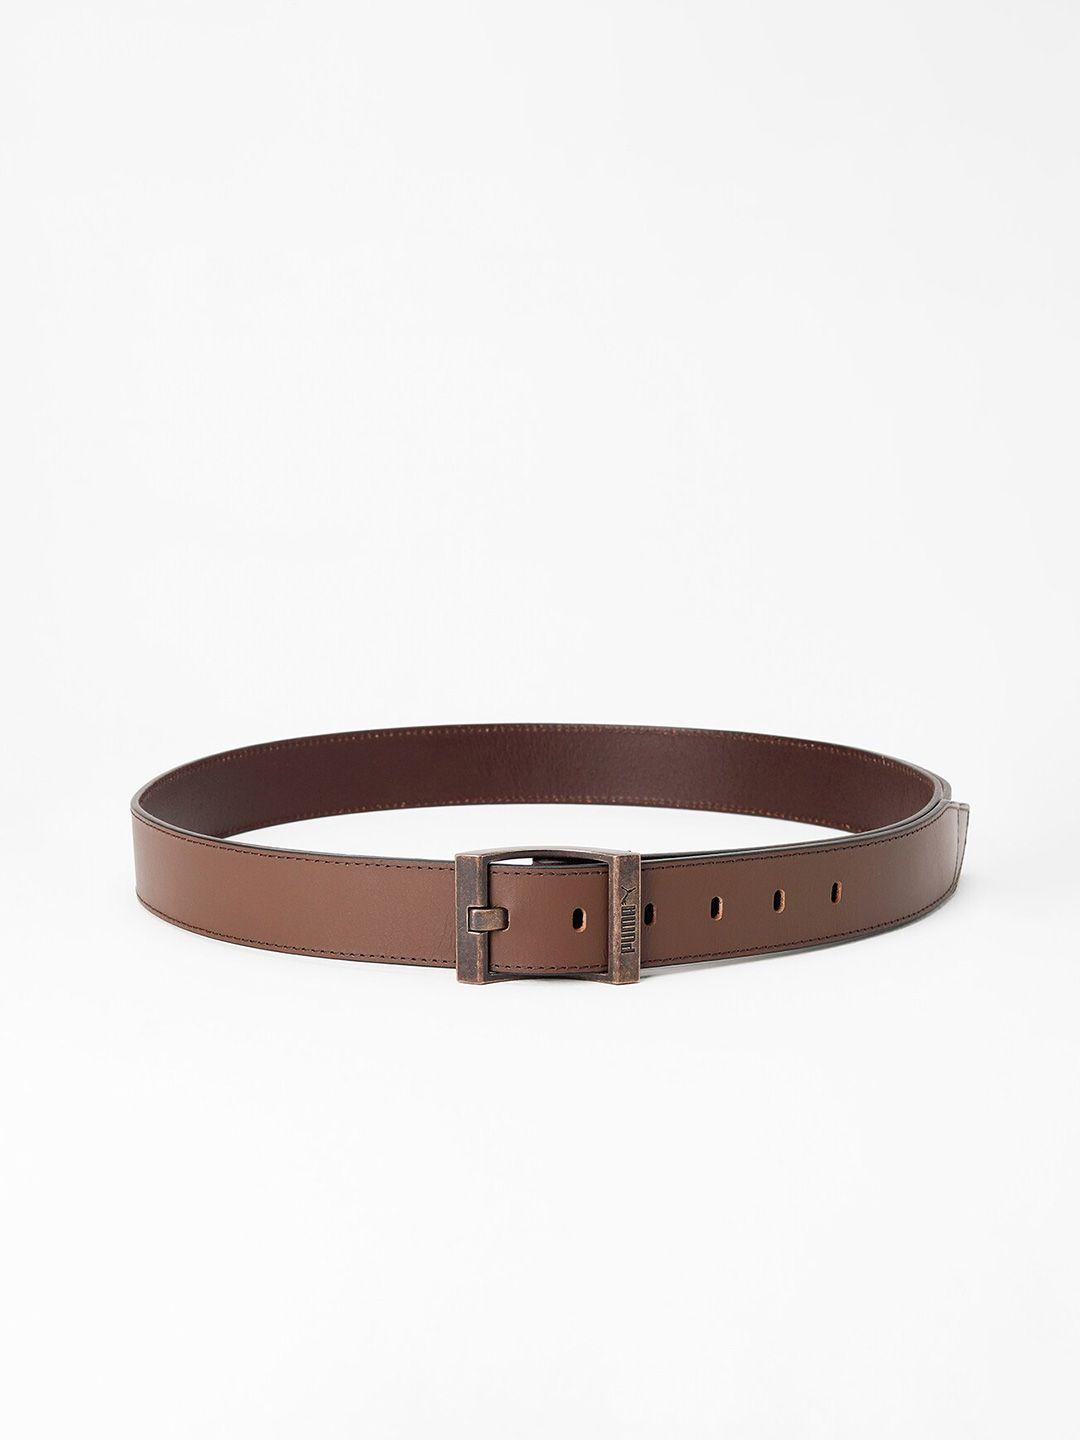 puma-classic-leather-belt